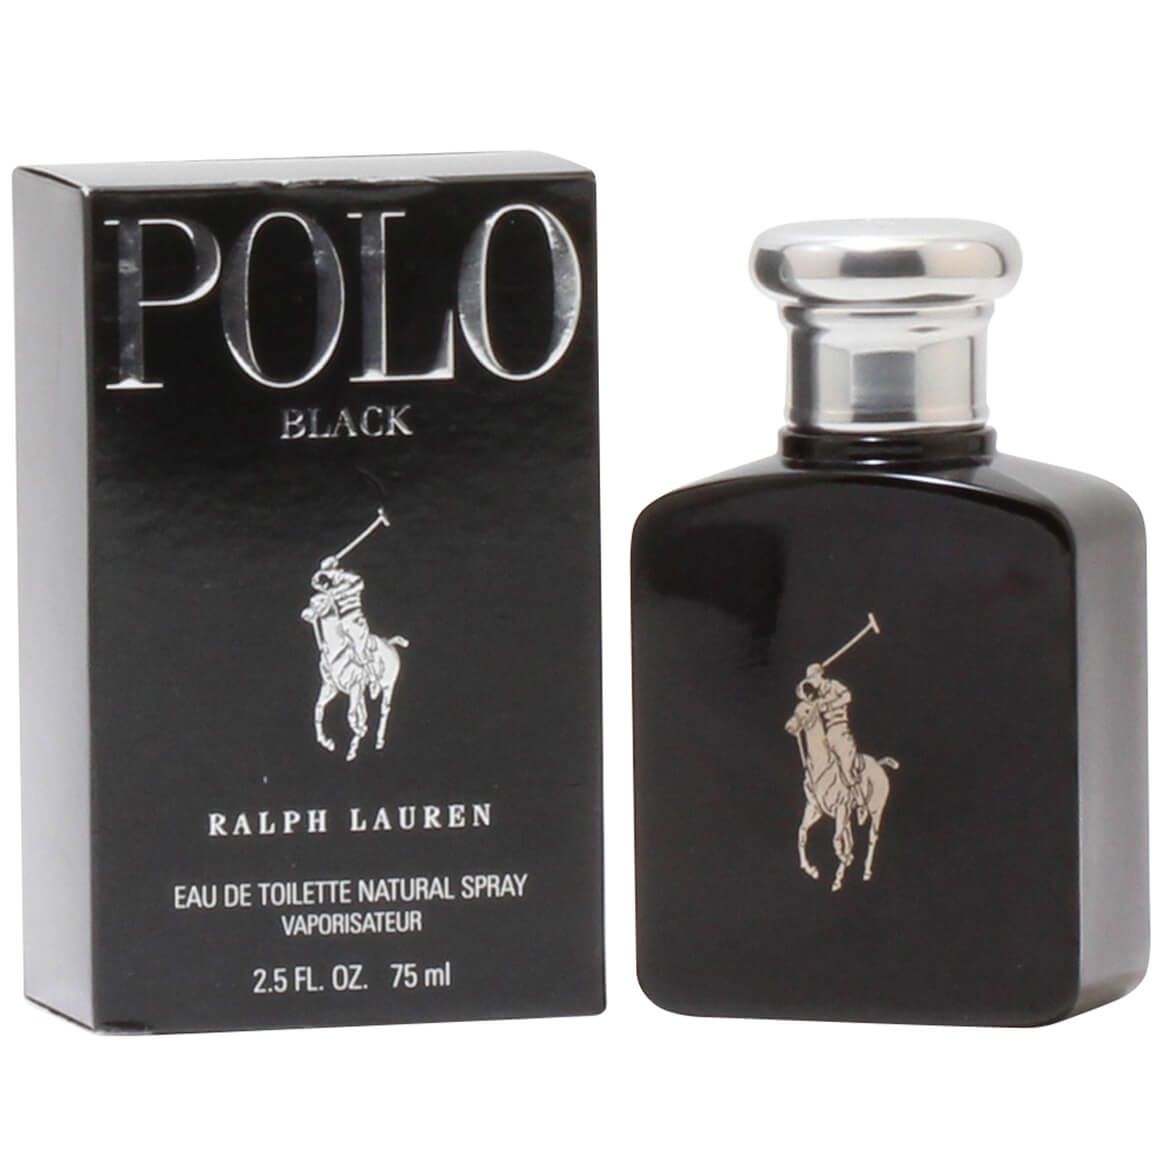 Polo Black by Ralph Lauren for Men EDT, 2.5 fl. oz. + '-' + 377166